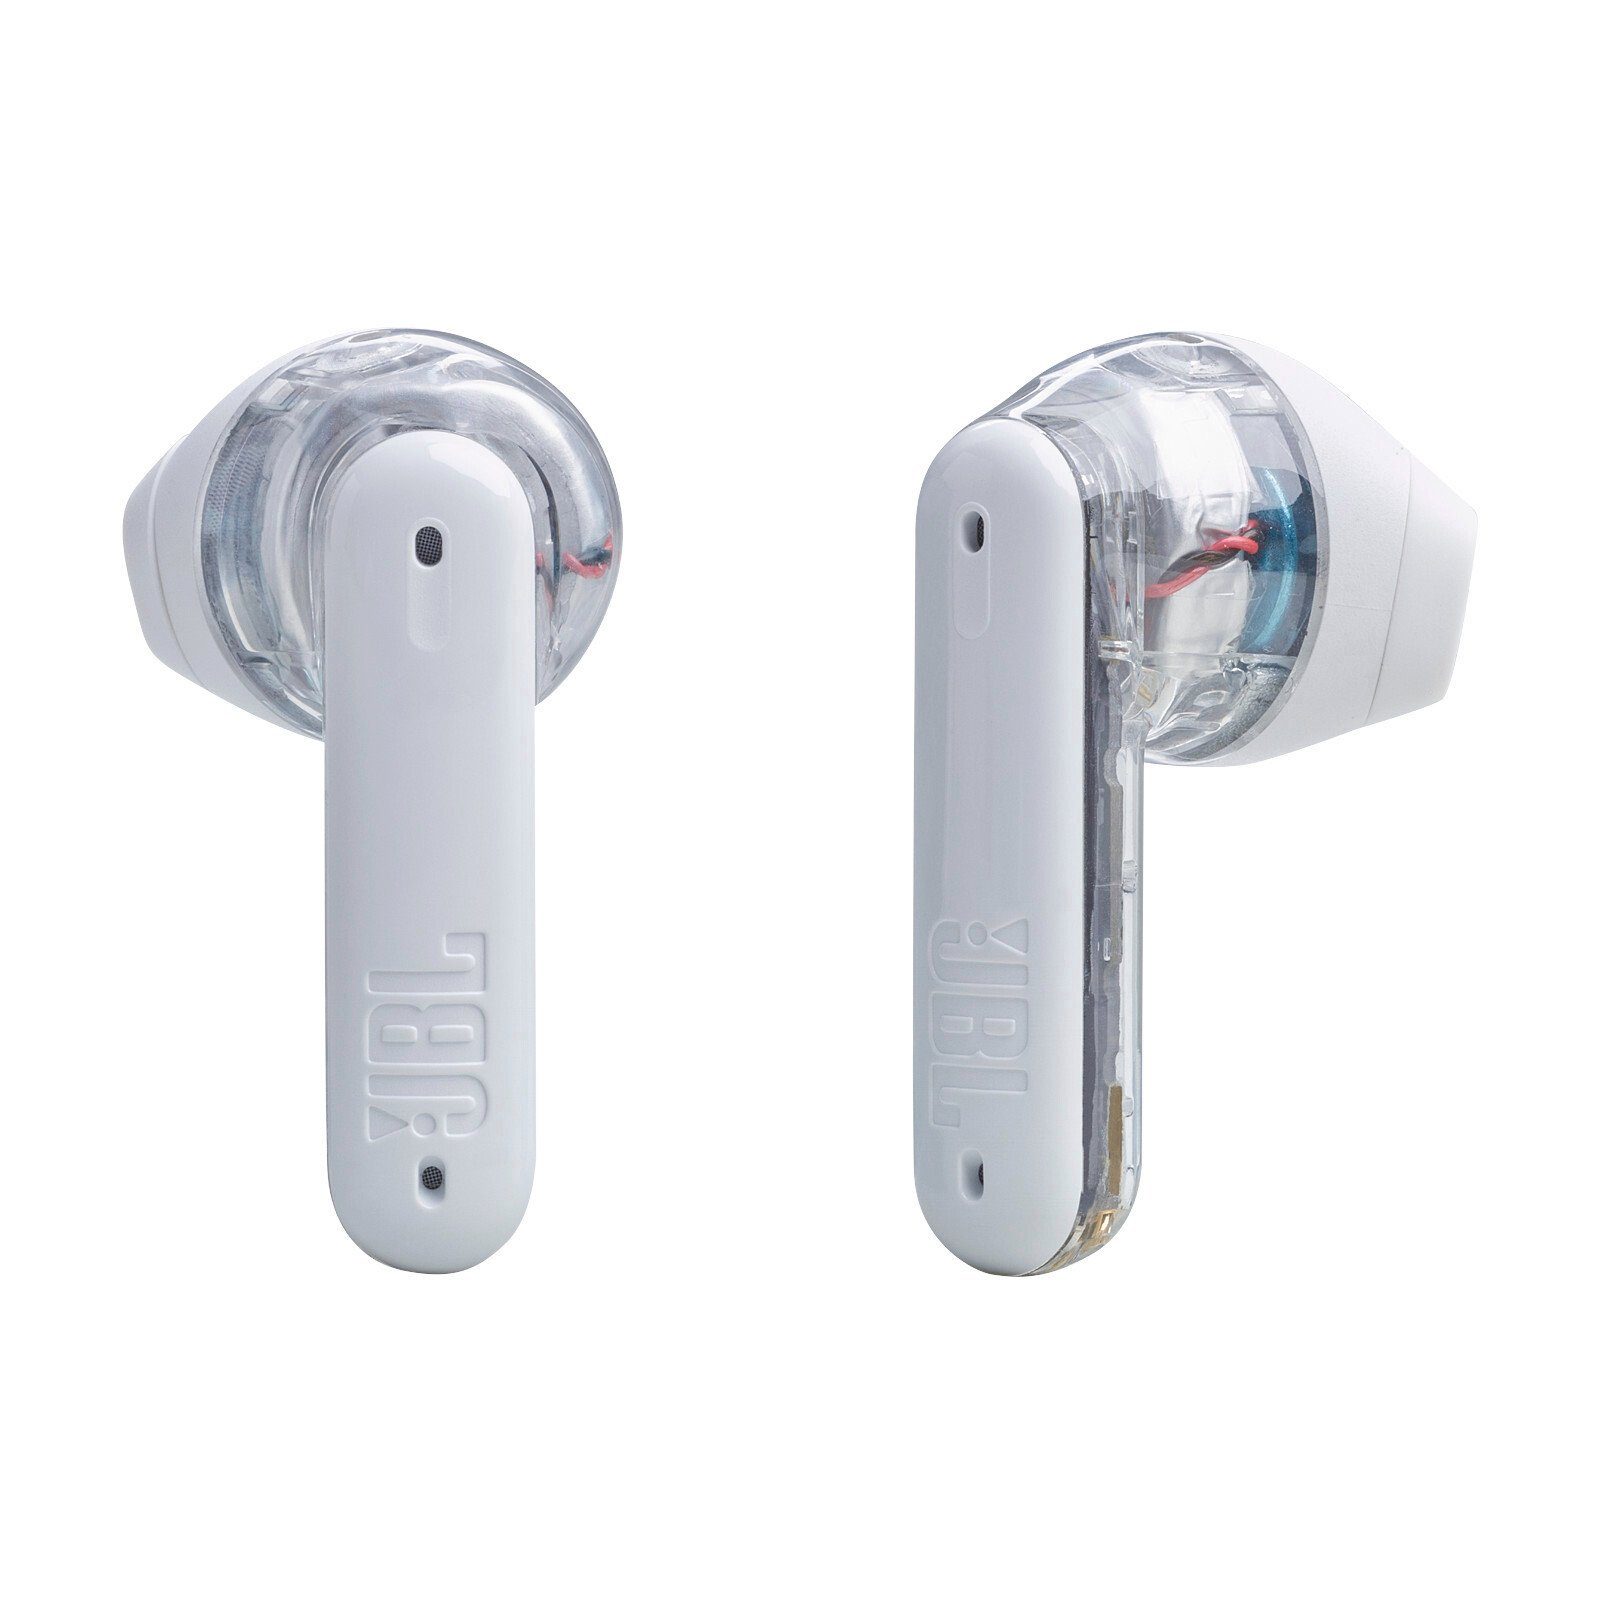 In-Ear-Kopfhörer Tune wireless Ghost- JBL weiß/transparent Flex Sonderedition